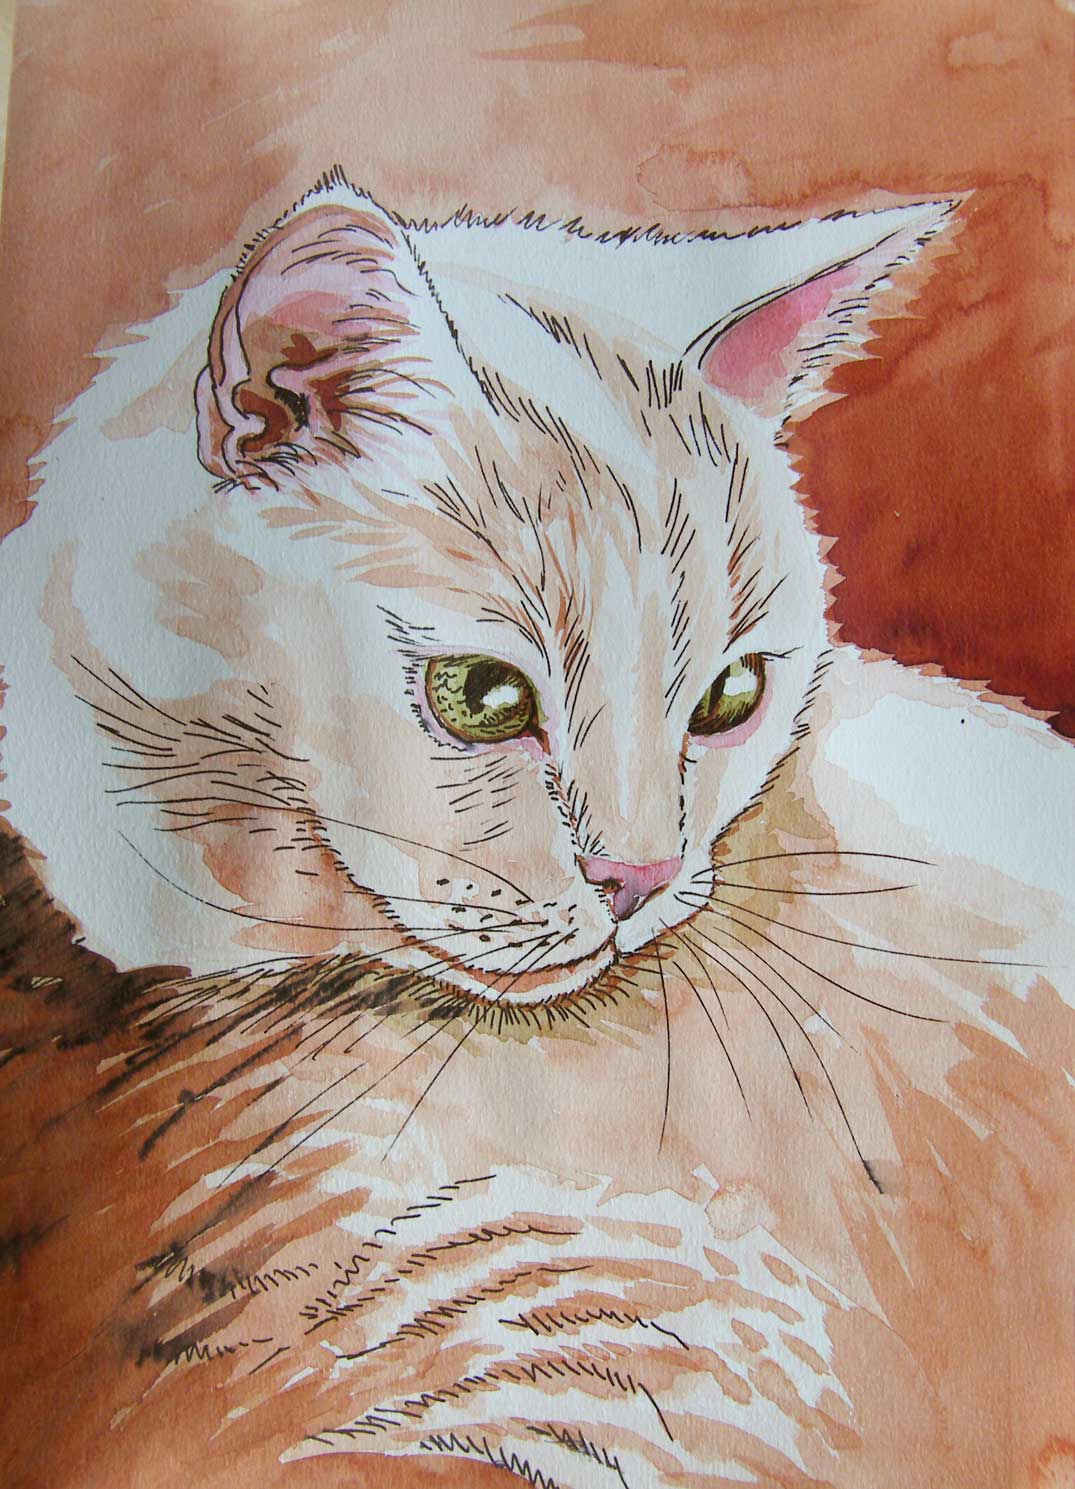 kot rysunek kolorowym tuszem małgorzata jaskłowska